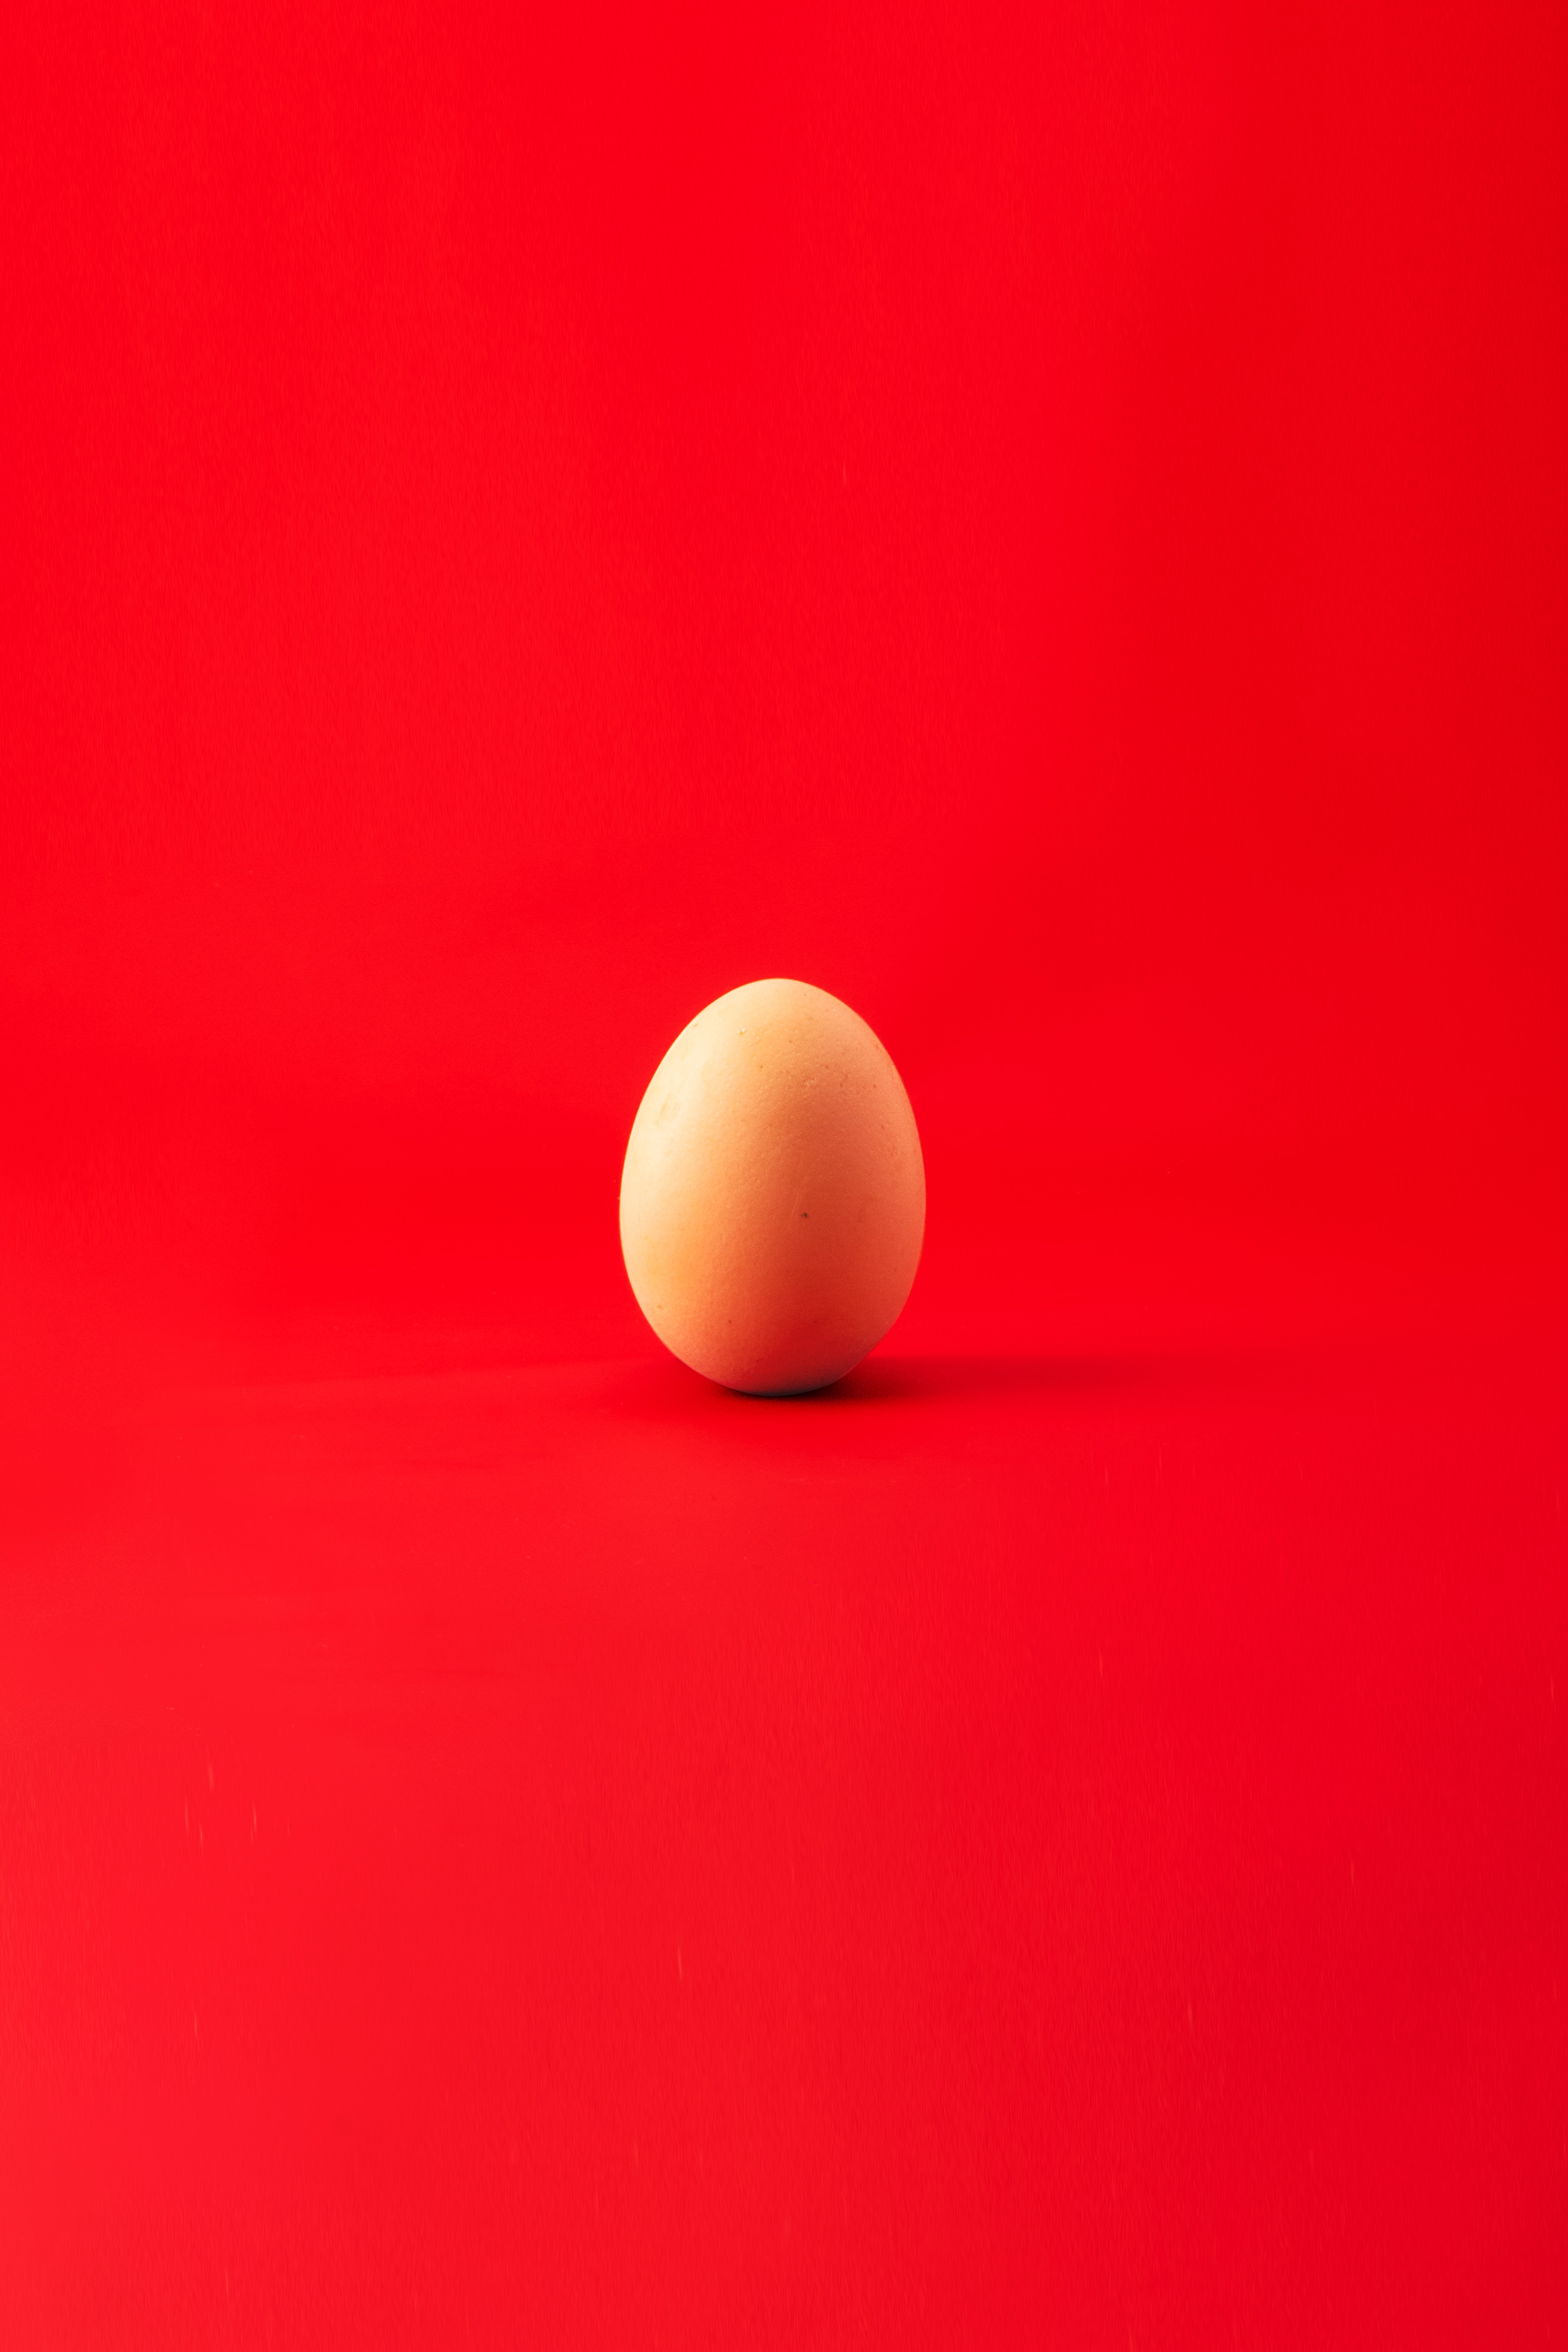 egg, minimalism, red, chicken egg